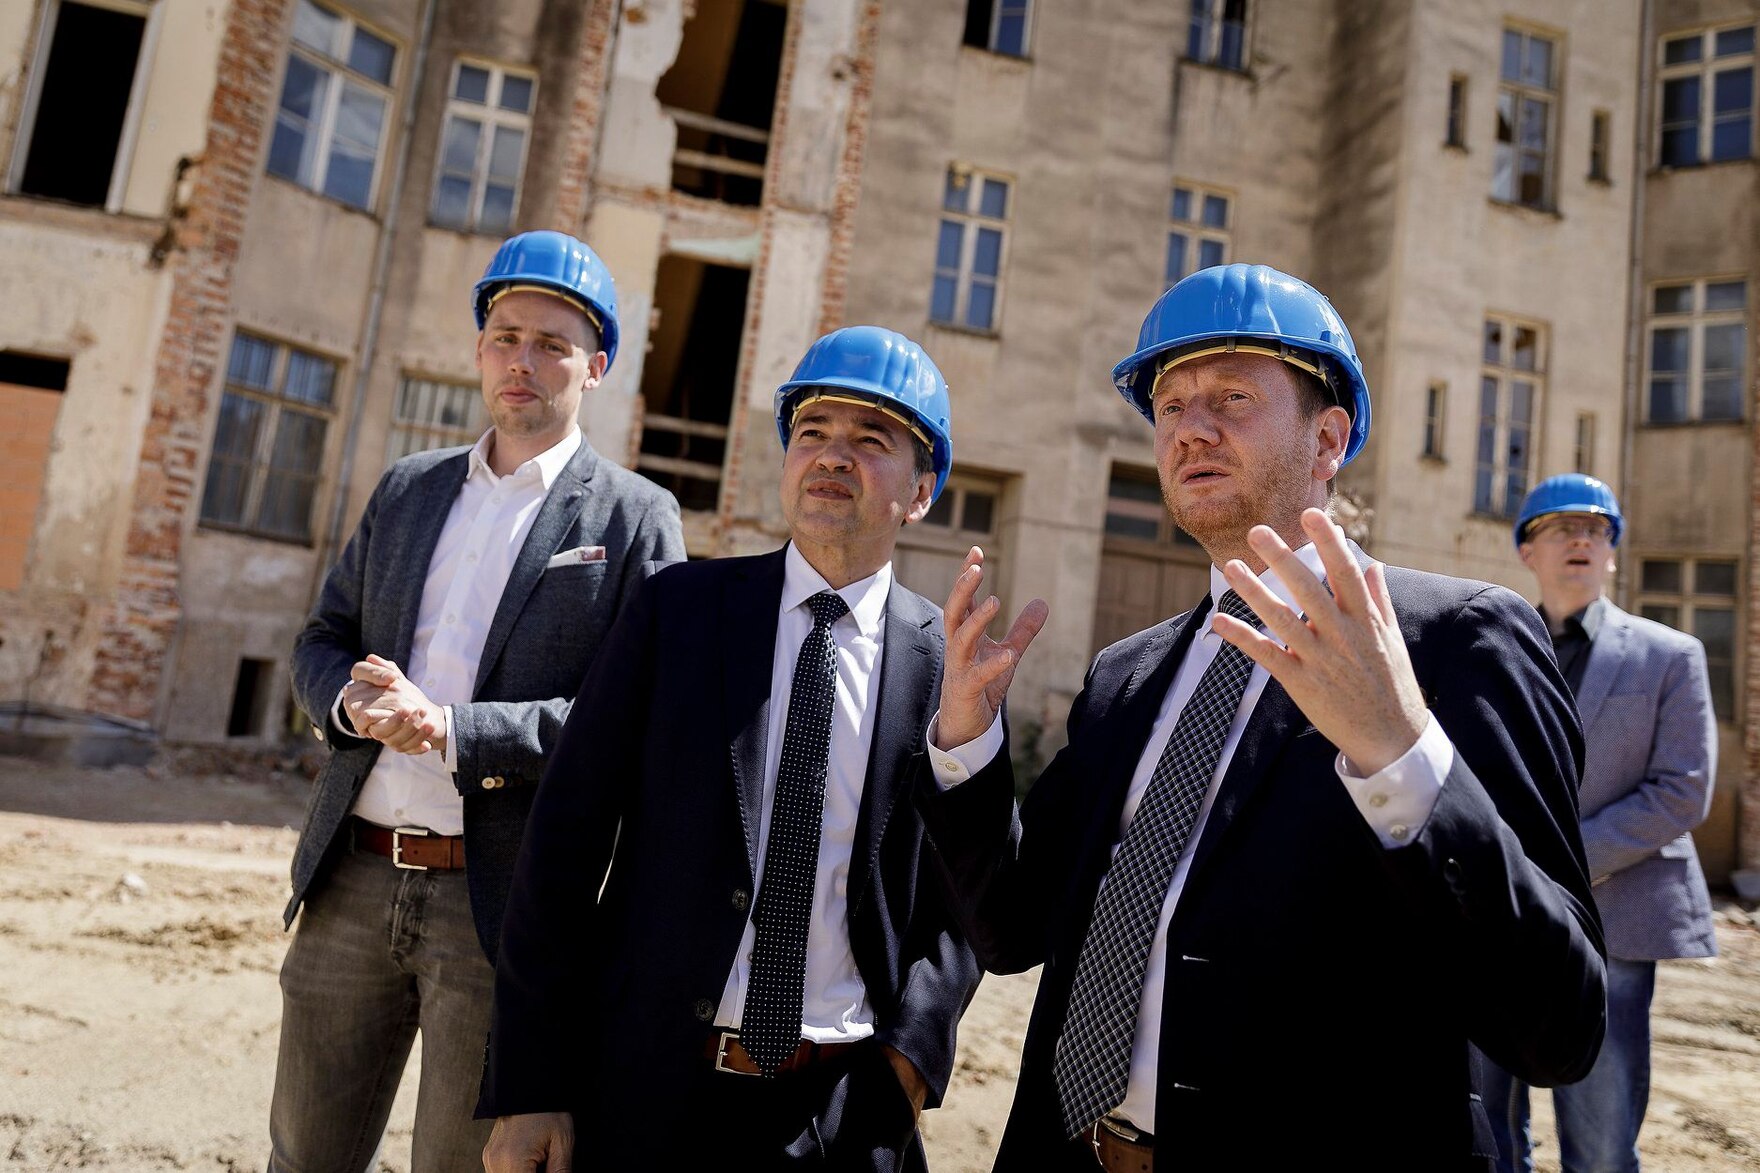 Männer mit blauen Bauhelmen auf dem Kopf besichtigen eine Baustelle.